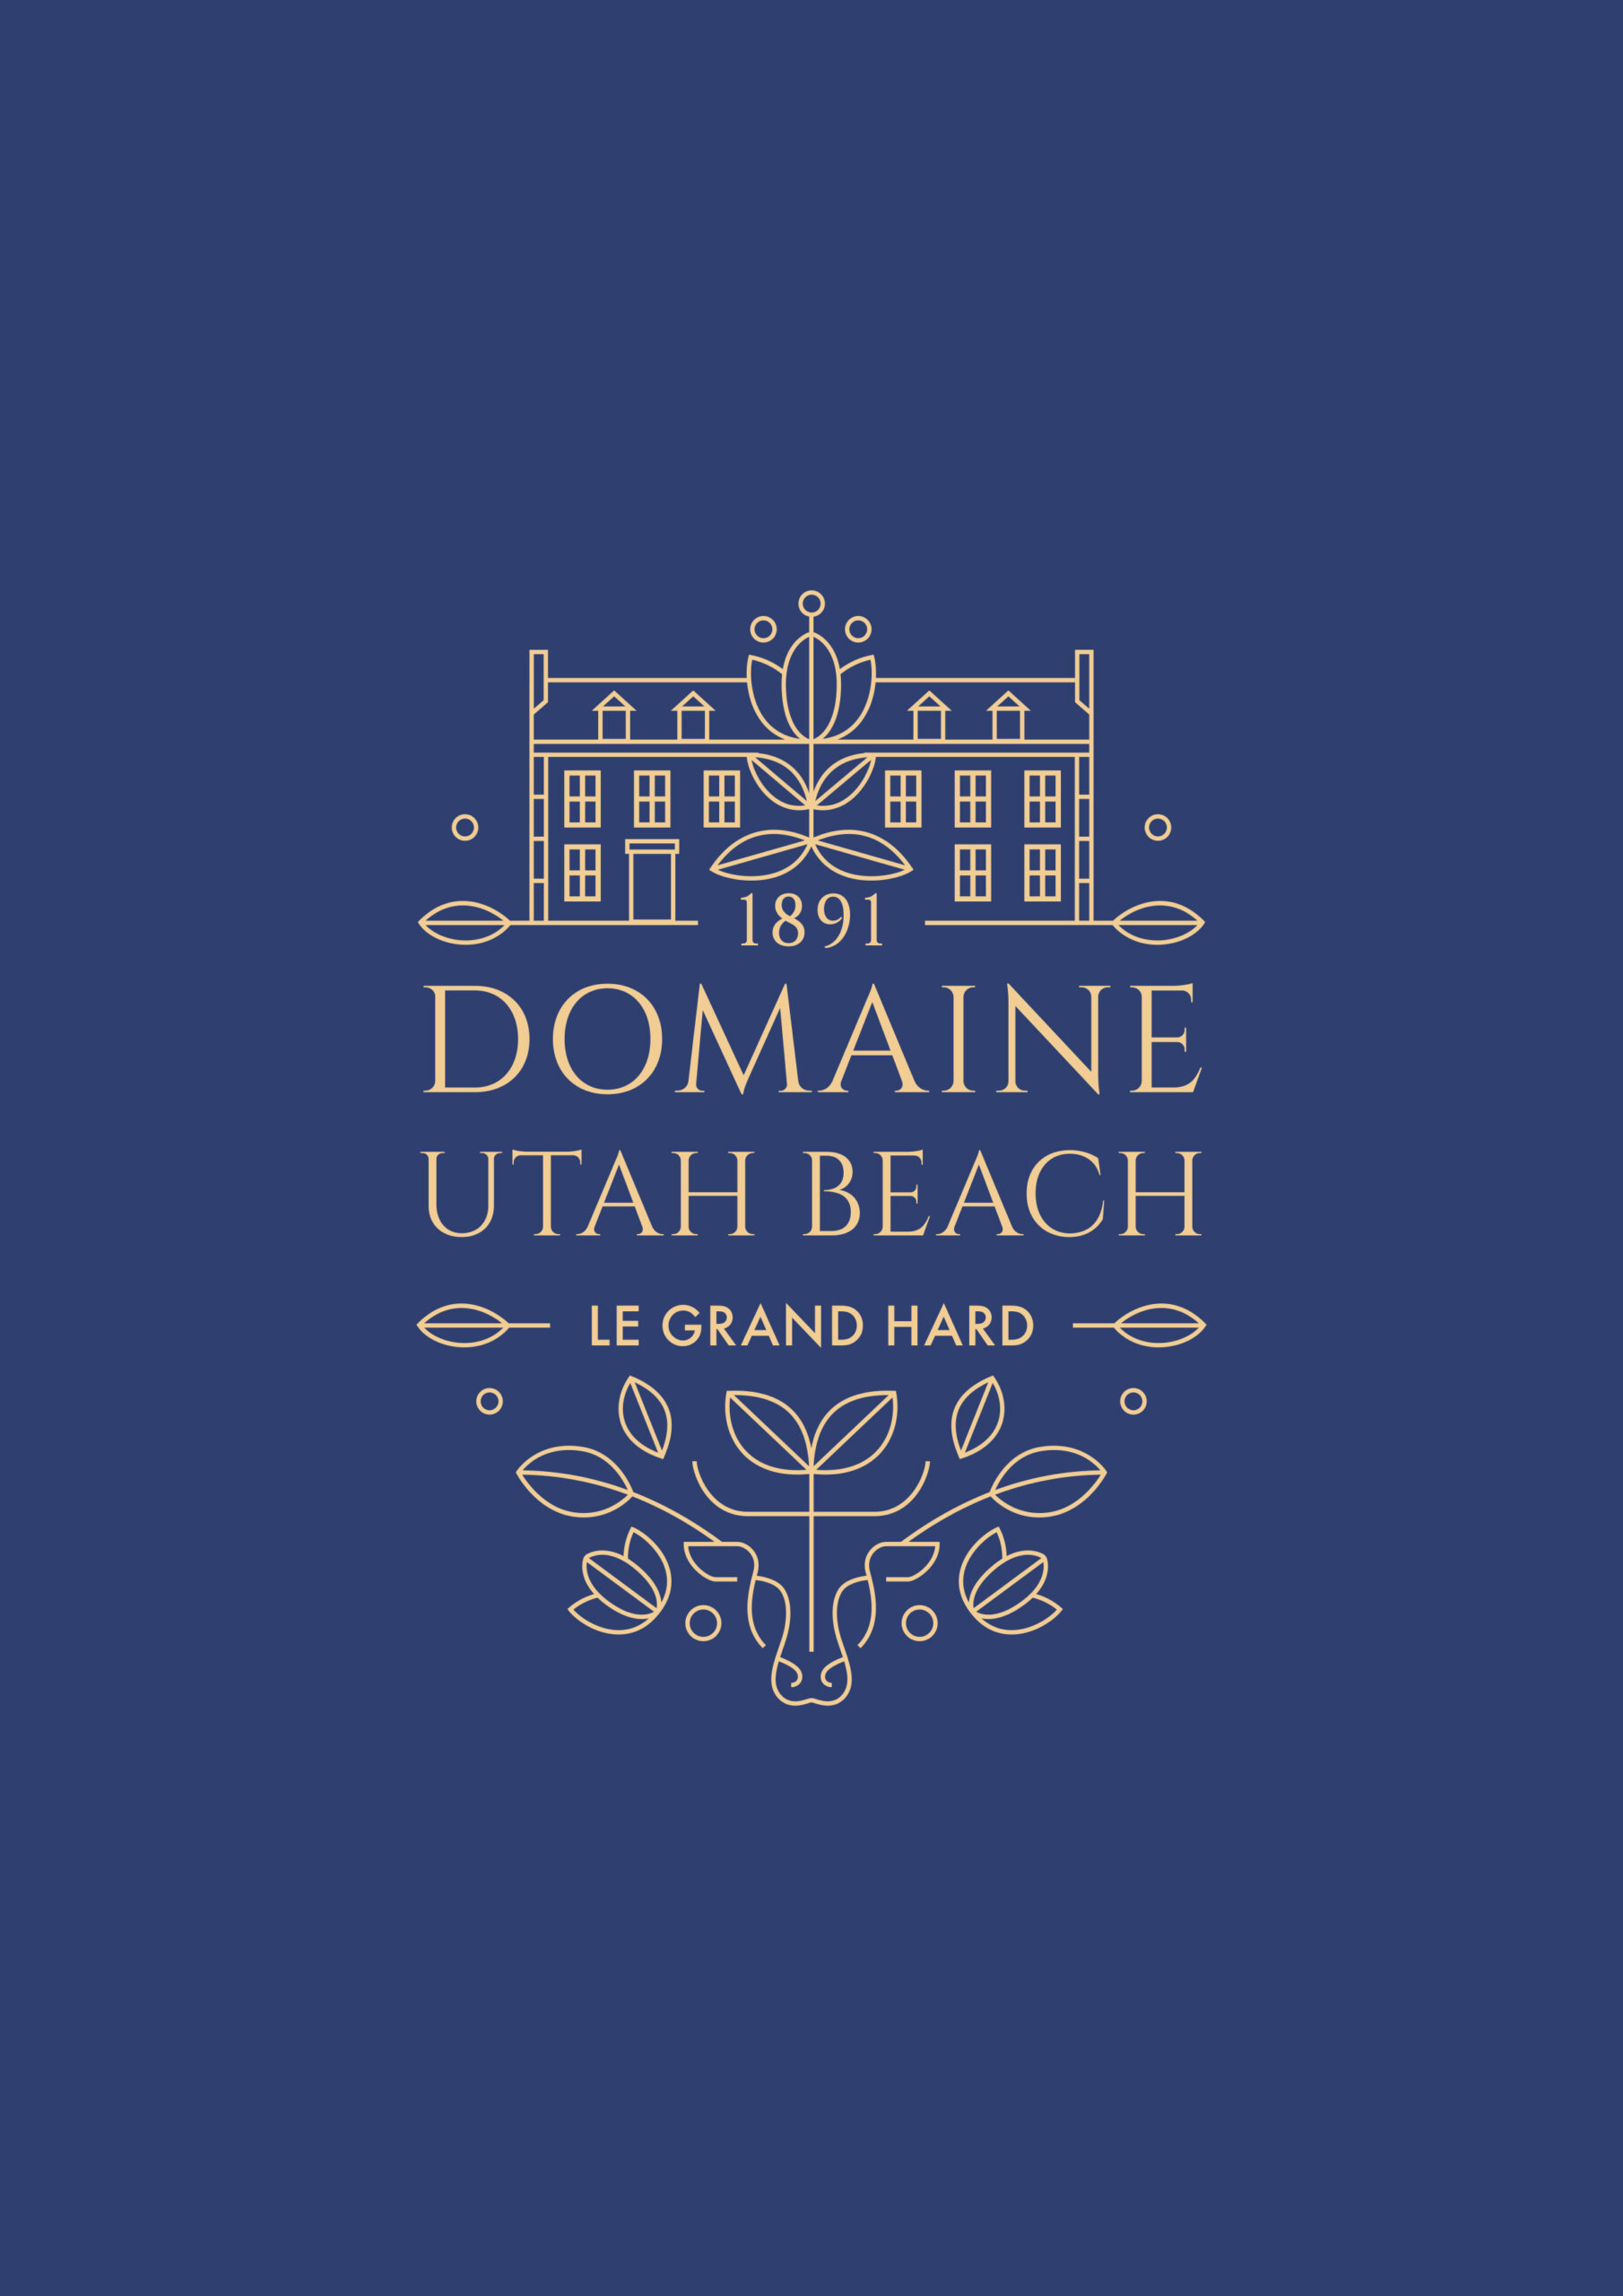 Partenaire officiel - Domaine Utah Beach